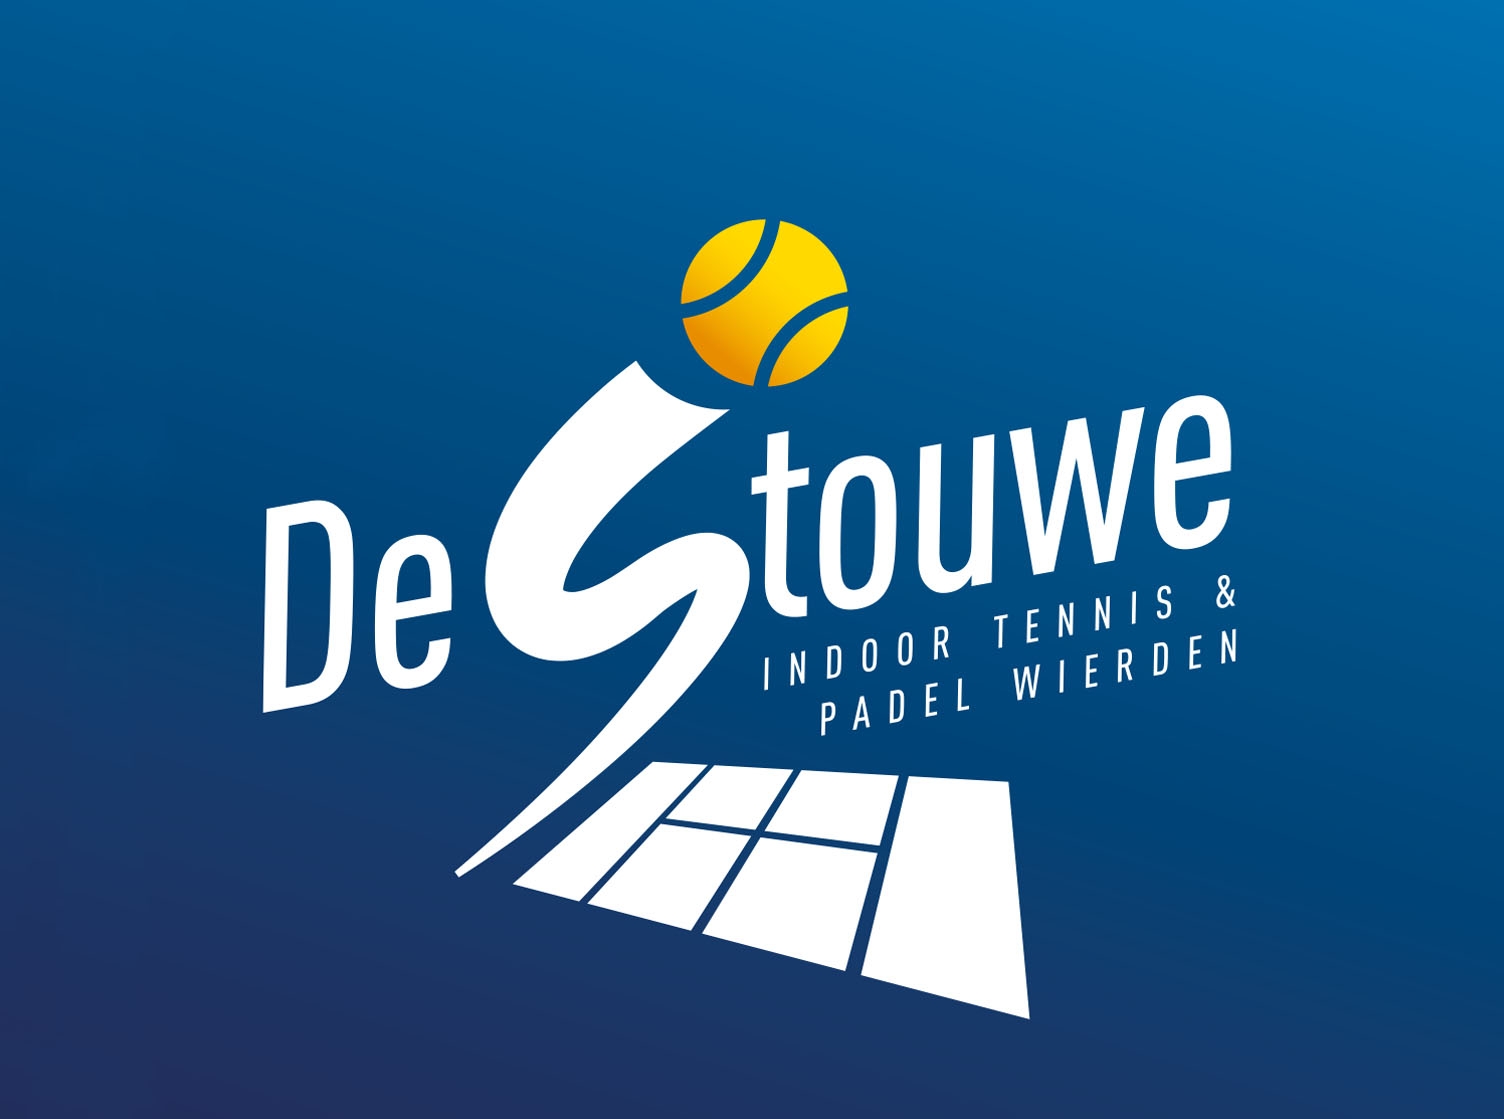 Profile image of venue De Stouwe indoor tennis & padel Wierden